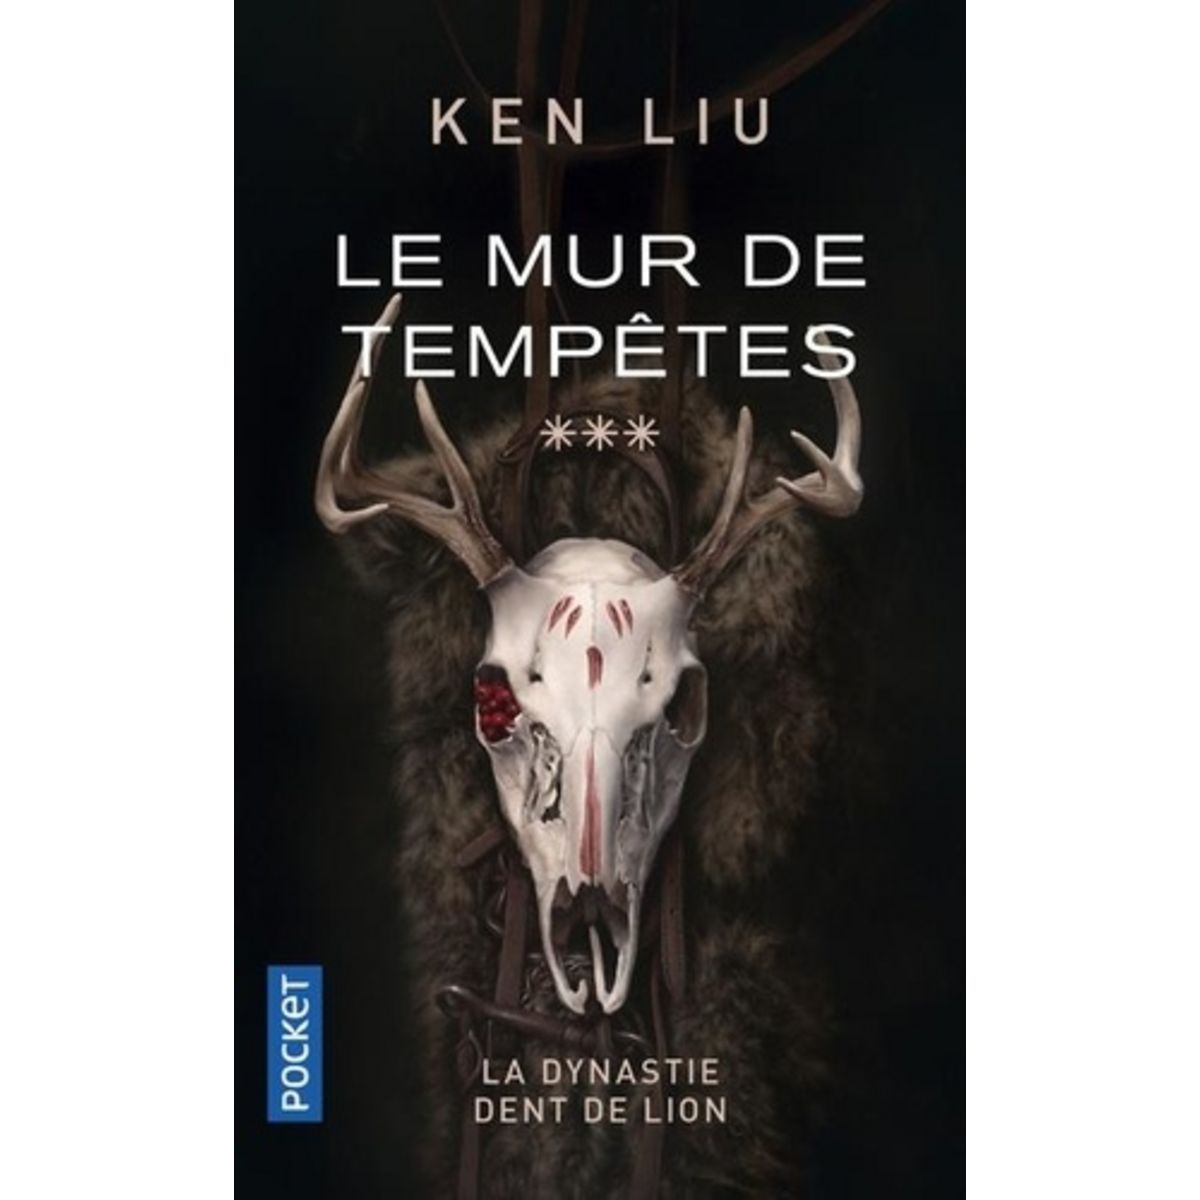  LA DYNASTIE DENTS DE LION TOME 3 : LE MUR DE TEMPETES, Liu Ken